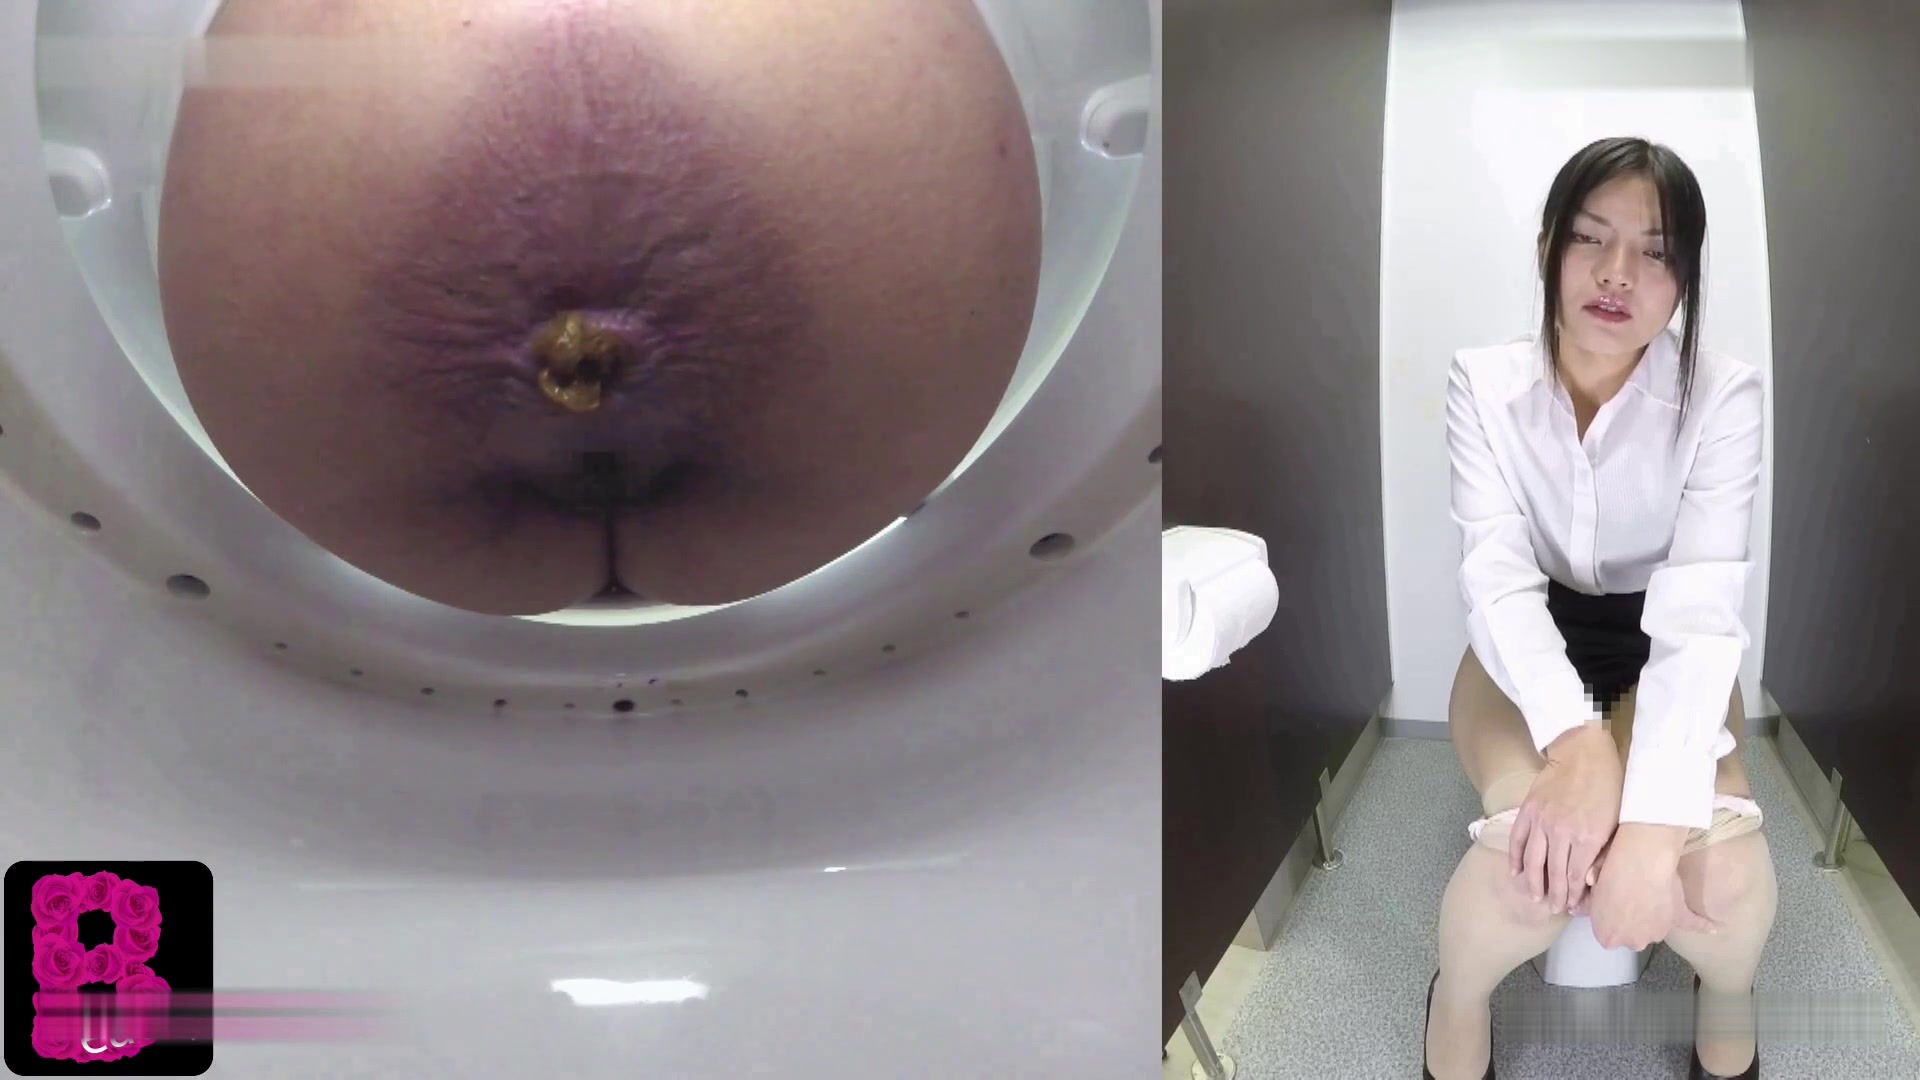 Japanese toilet cam video 3 ThisVid com. 